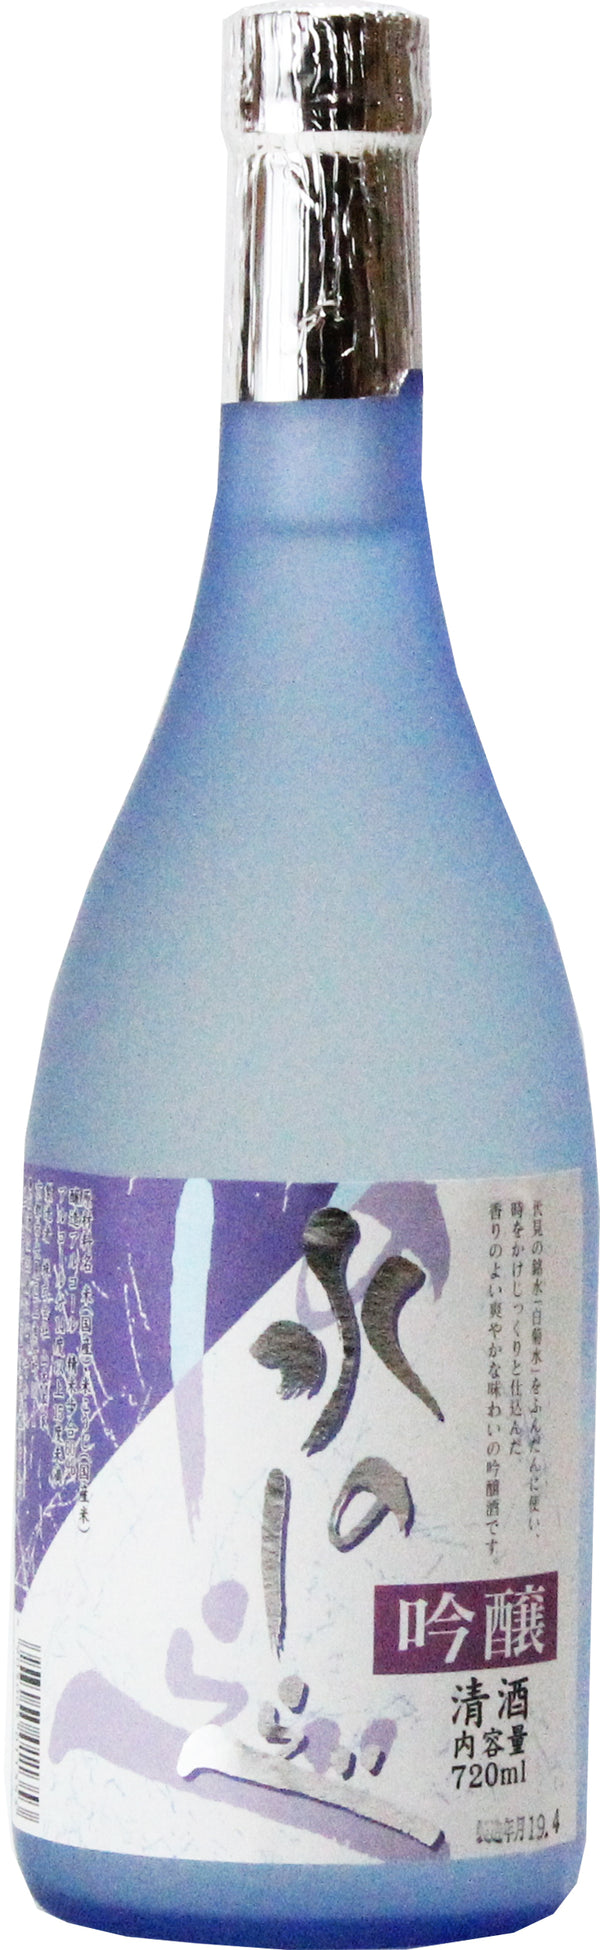 Sake School: Ginjo and Daiginjo